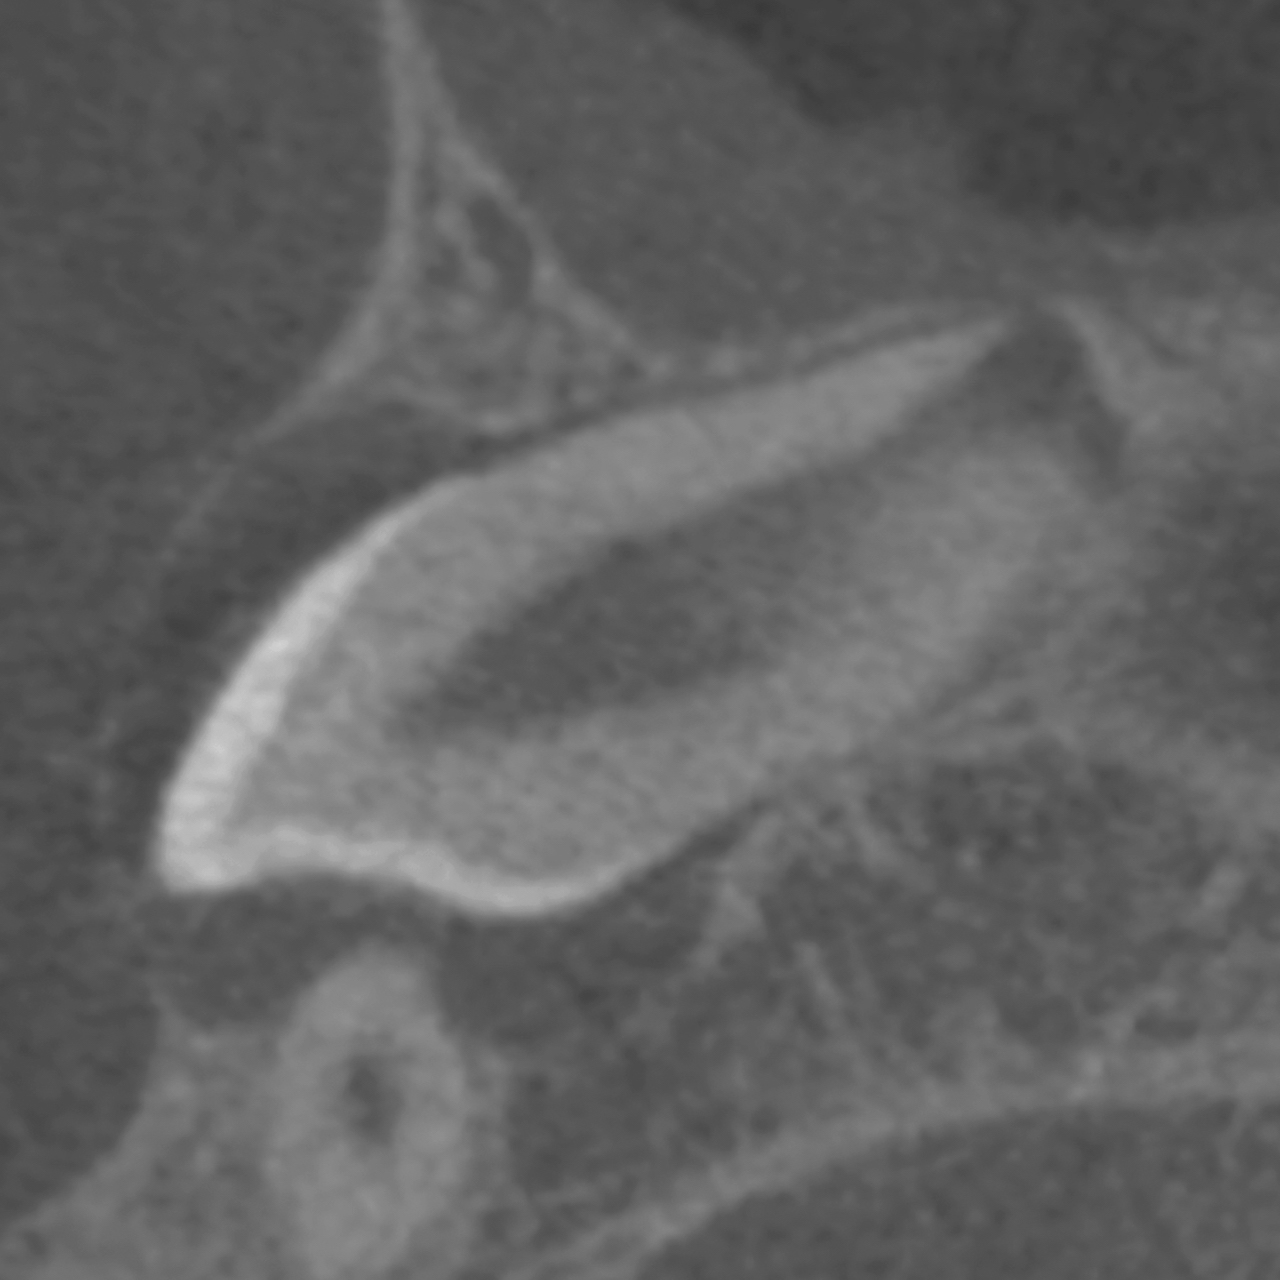 Abb. 3: Schräg-sagittale Ansicht (von schräg seitlich), exemplarische Darstellung der vollständigen Einsehbarkeit des kranialen Anteils des Parodontalraums des Zahns 13. 